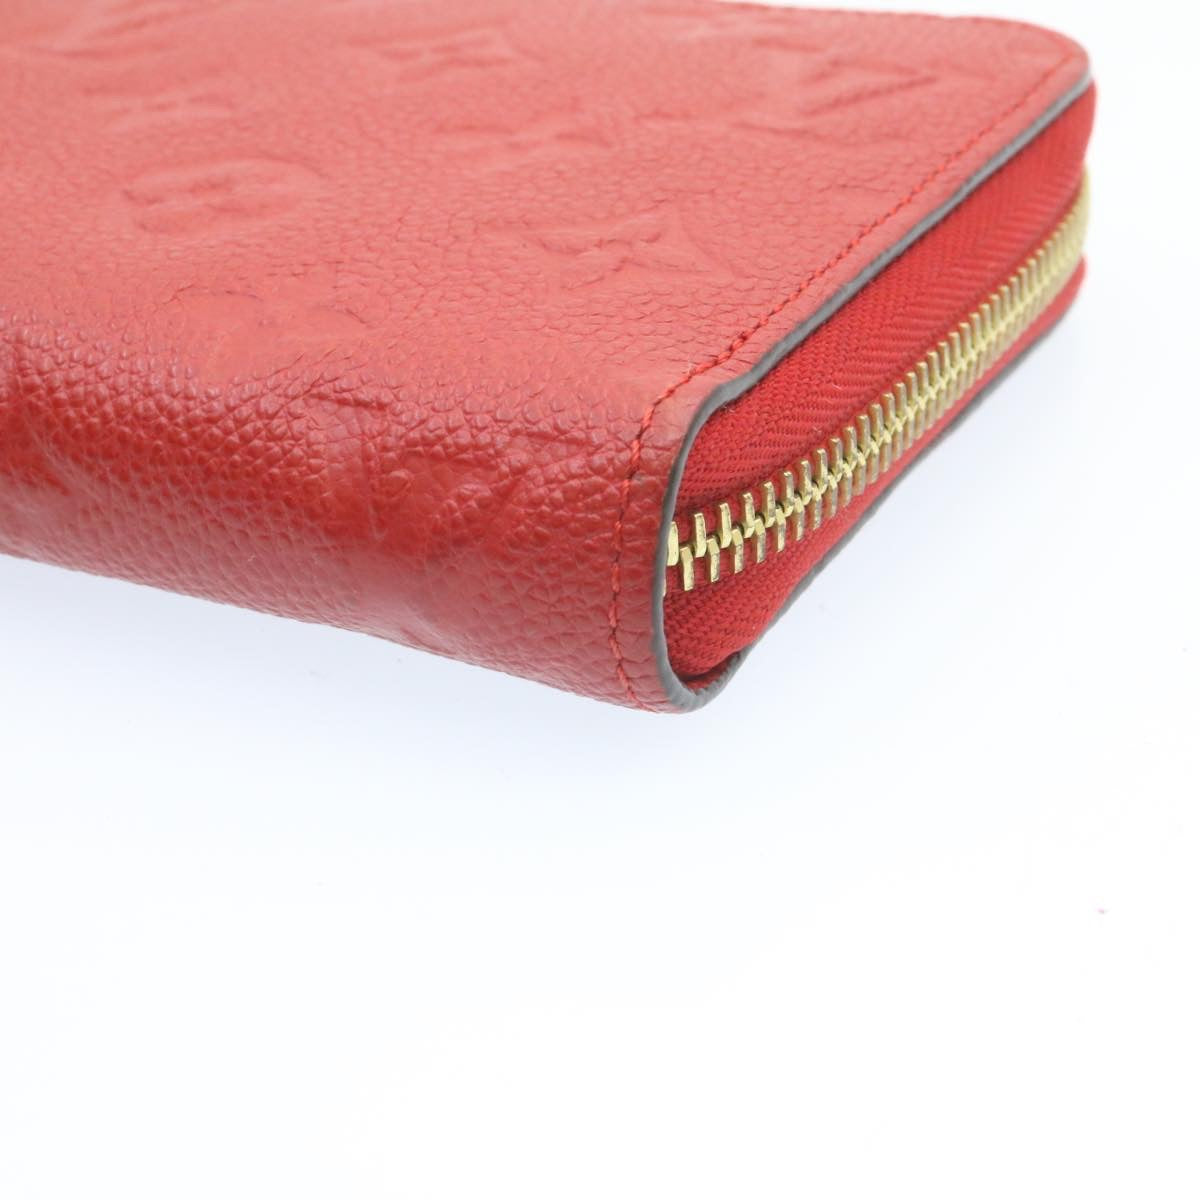 Purses, Wallets, Cases Louis Vuitton Louis Vuitton Monogram Empreinte Zippy Wallet Red M60017 LV Auth knn040